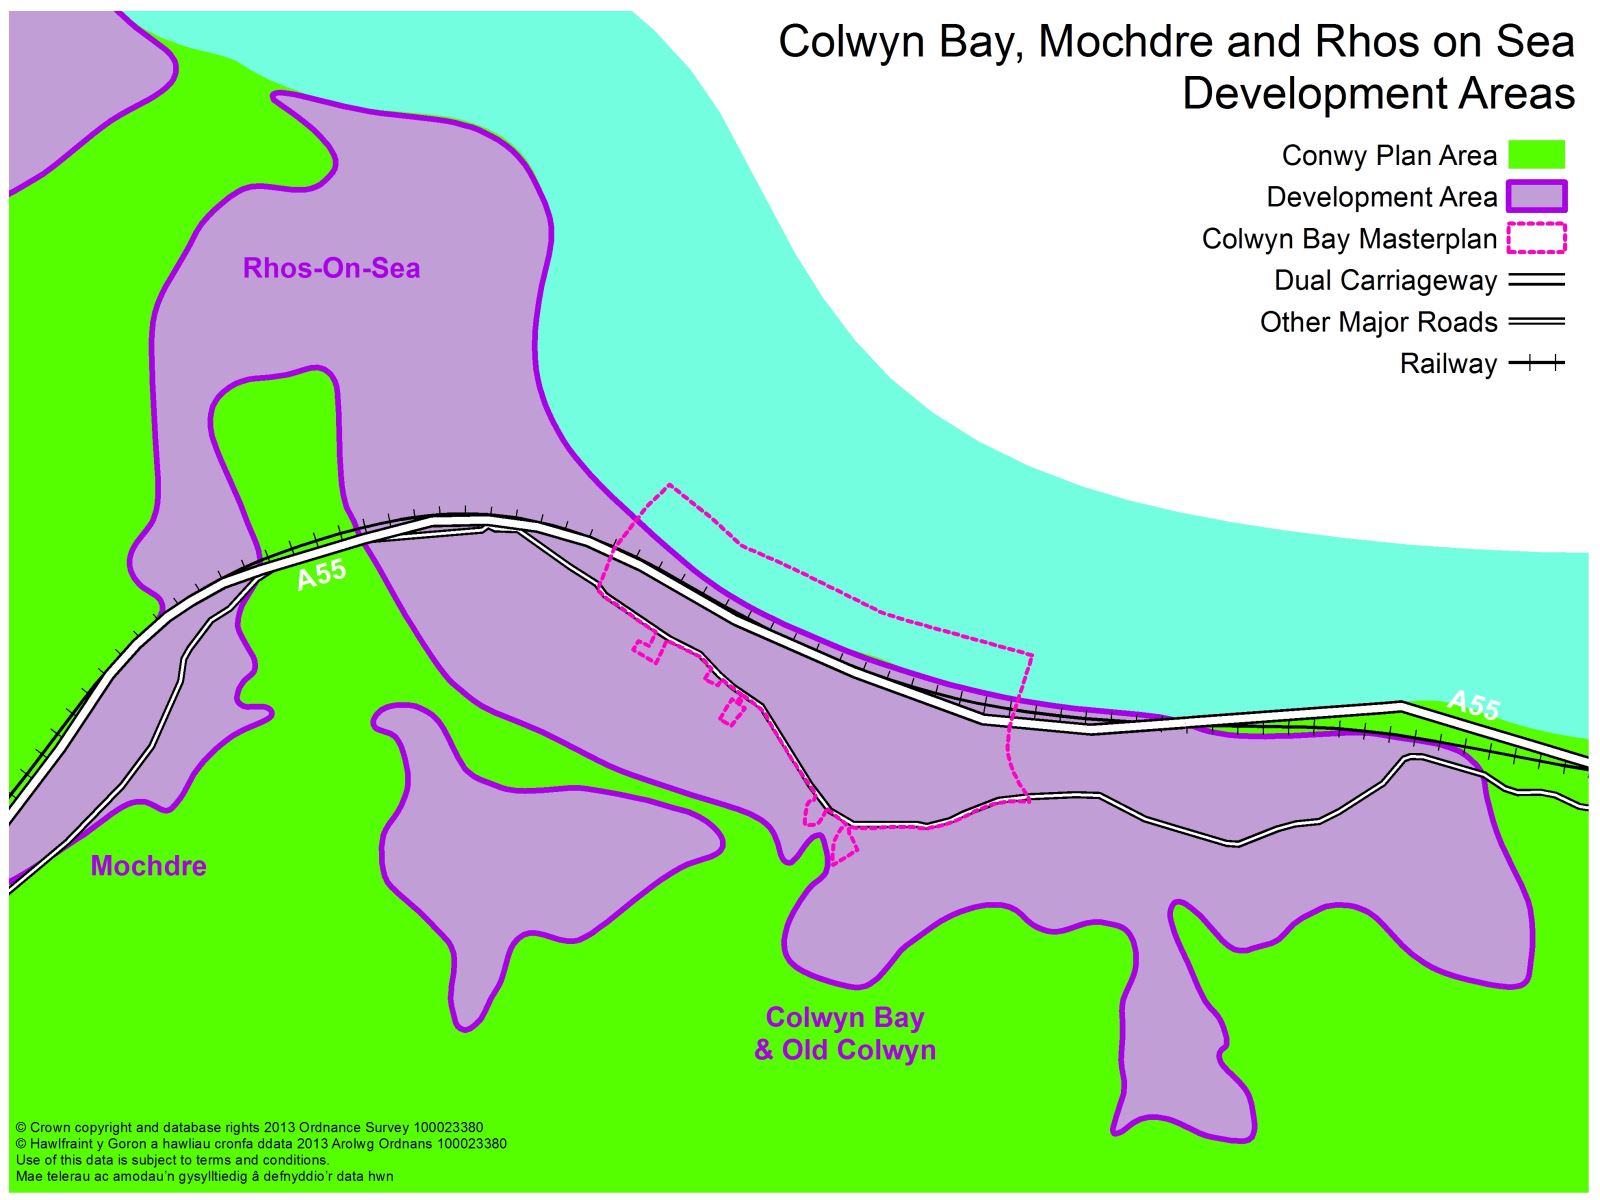 Colwyn Bay, Mochdre, Rhos-on-Sea and Old Colwyn Development Areas